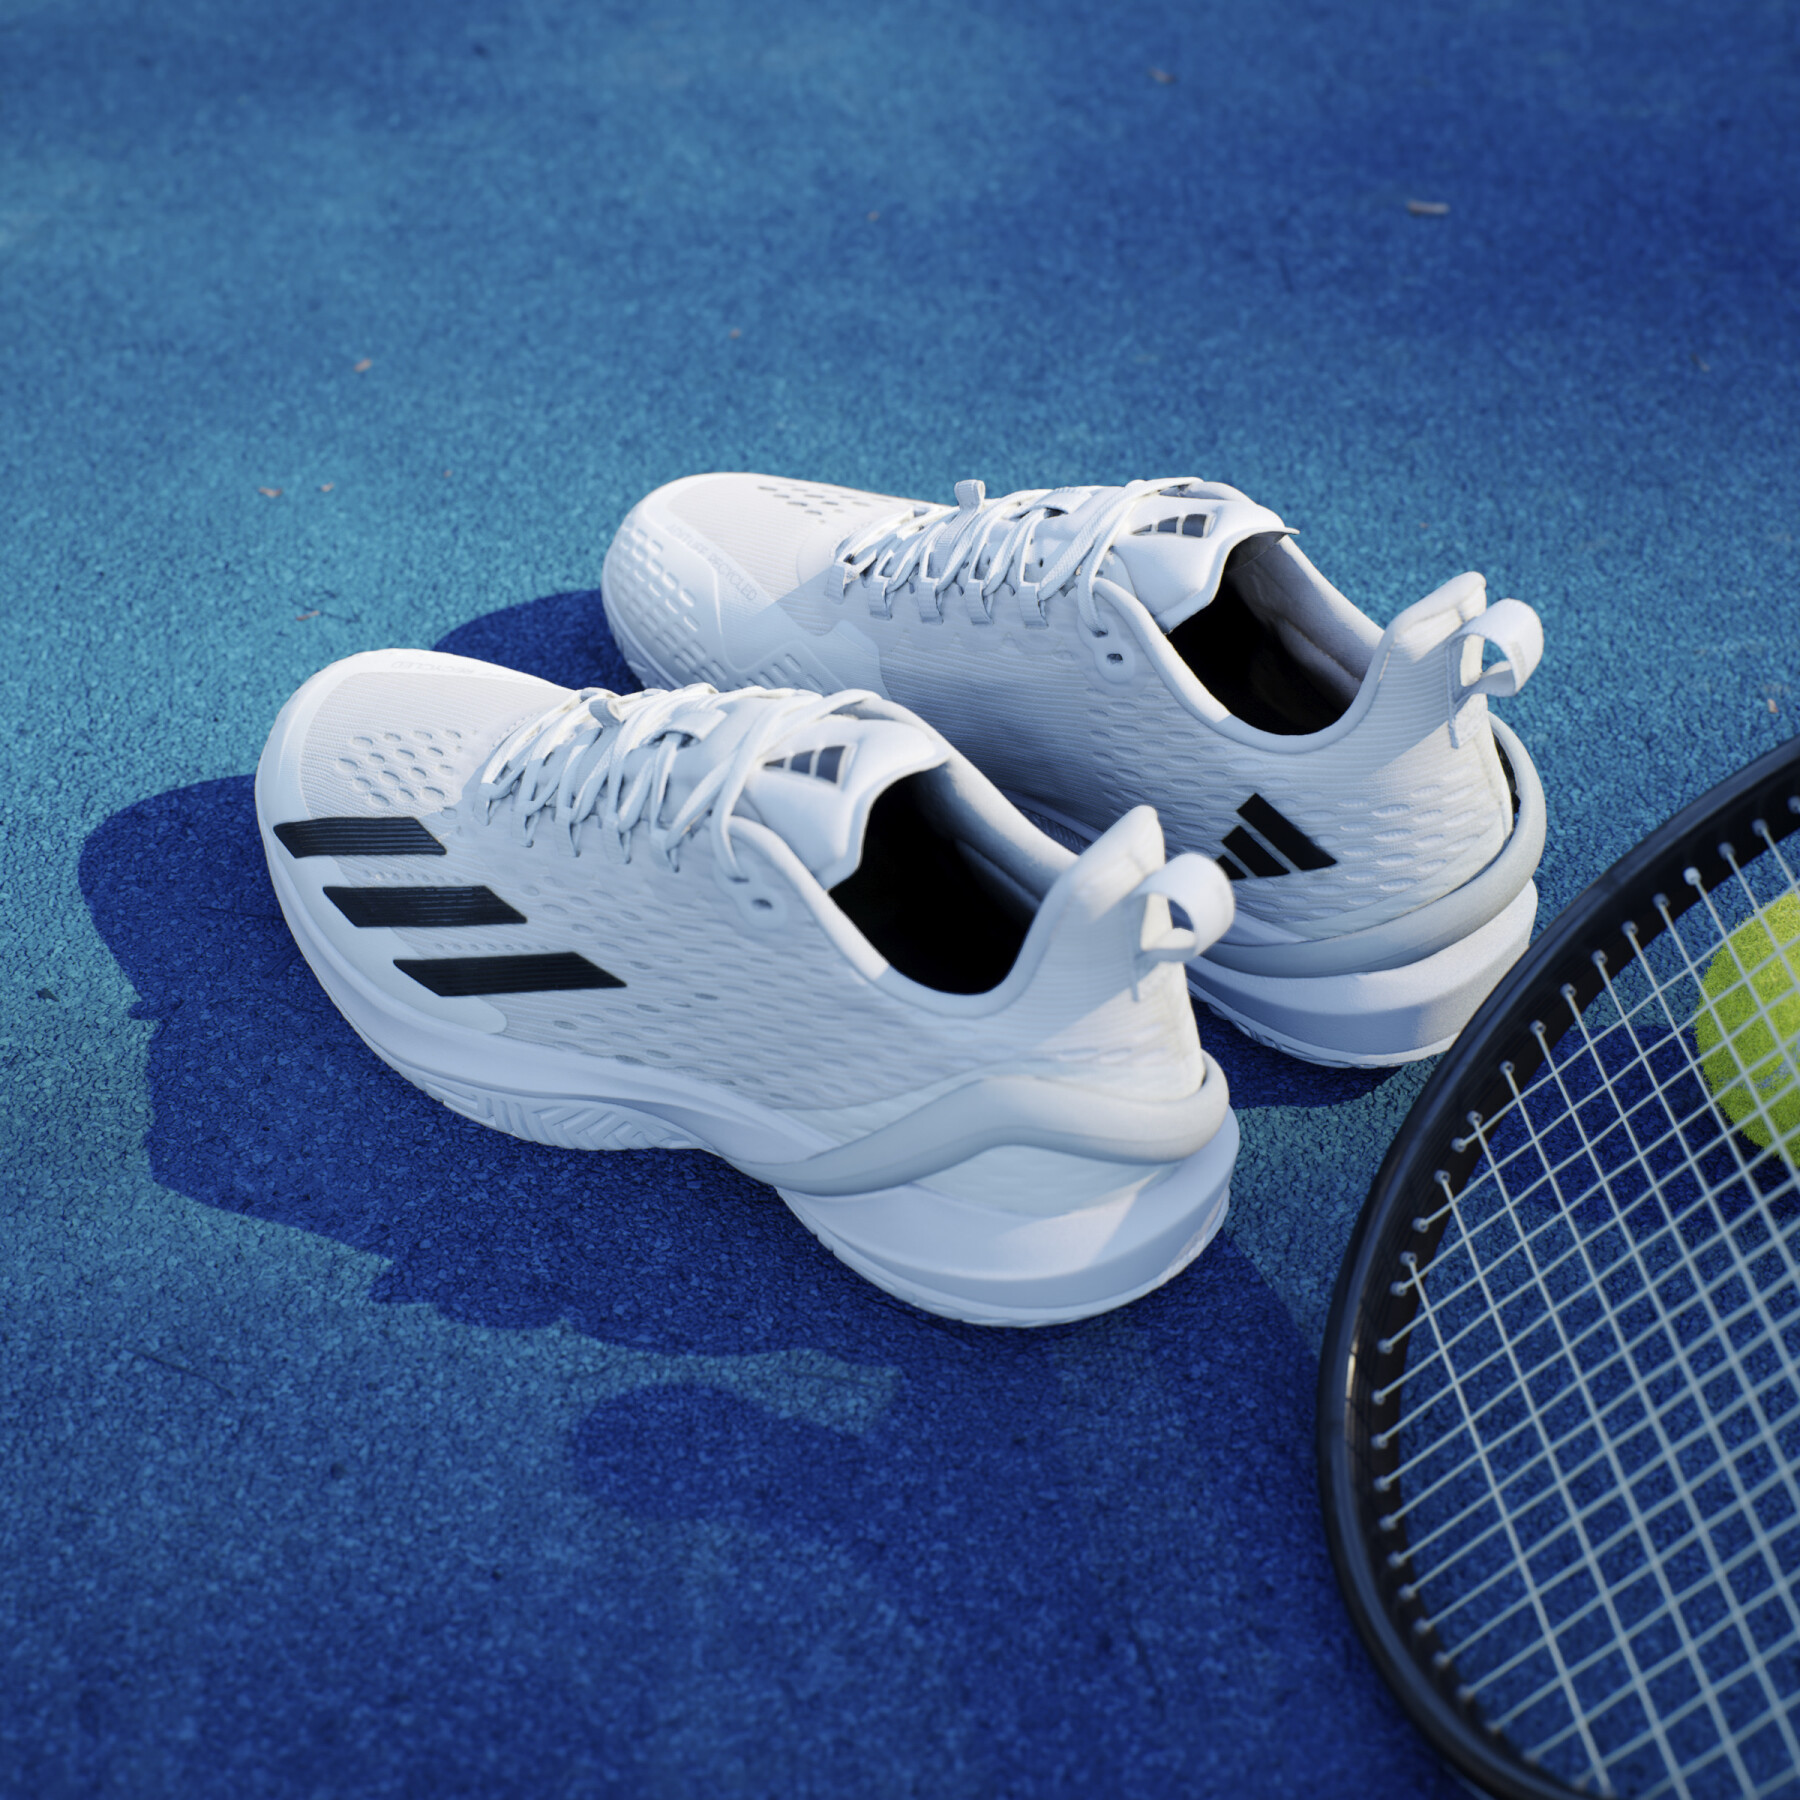 Tennisschoenen adidas 